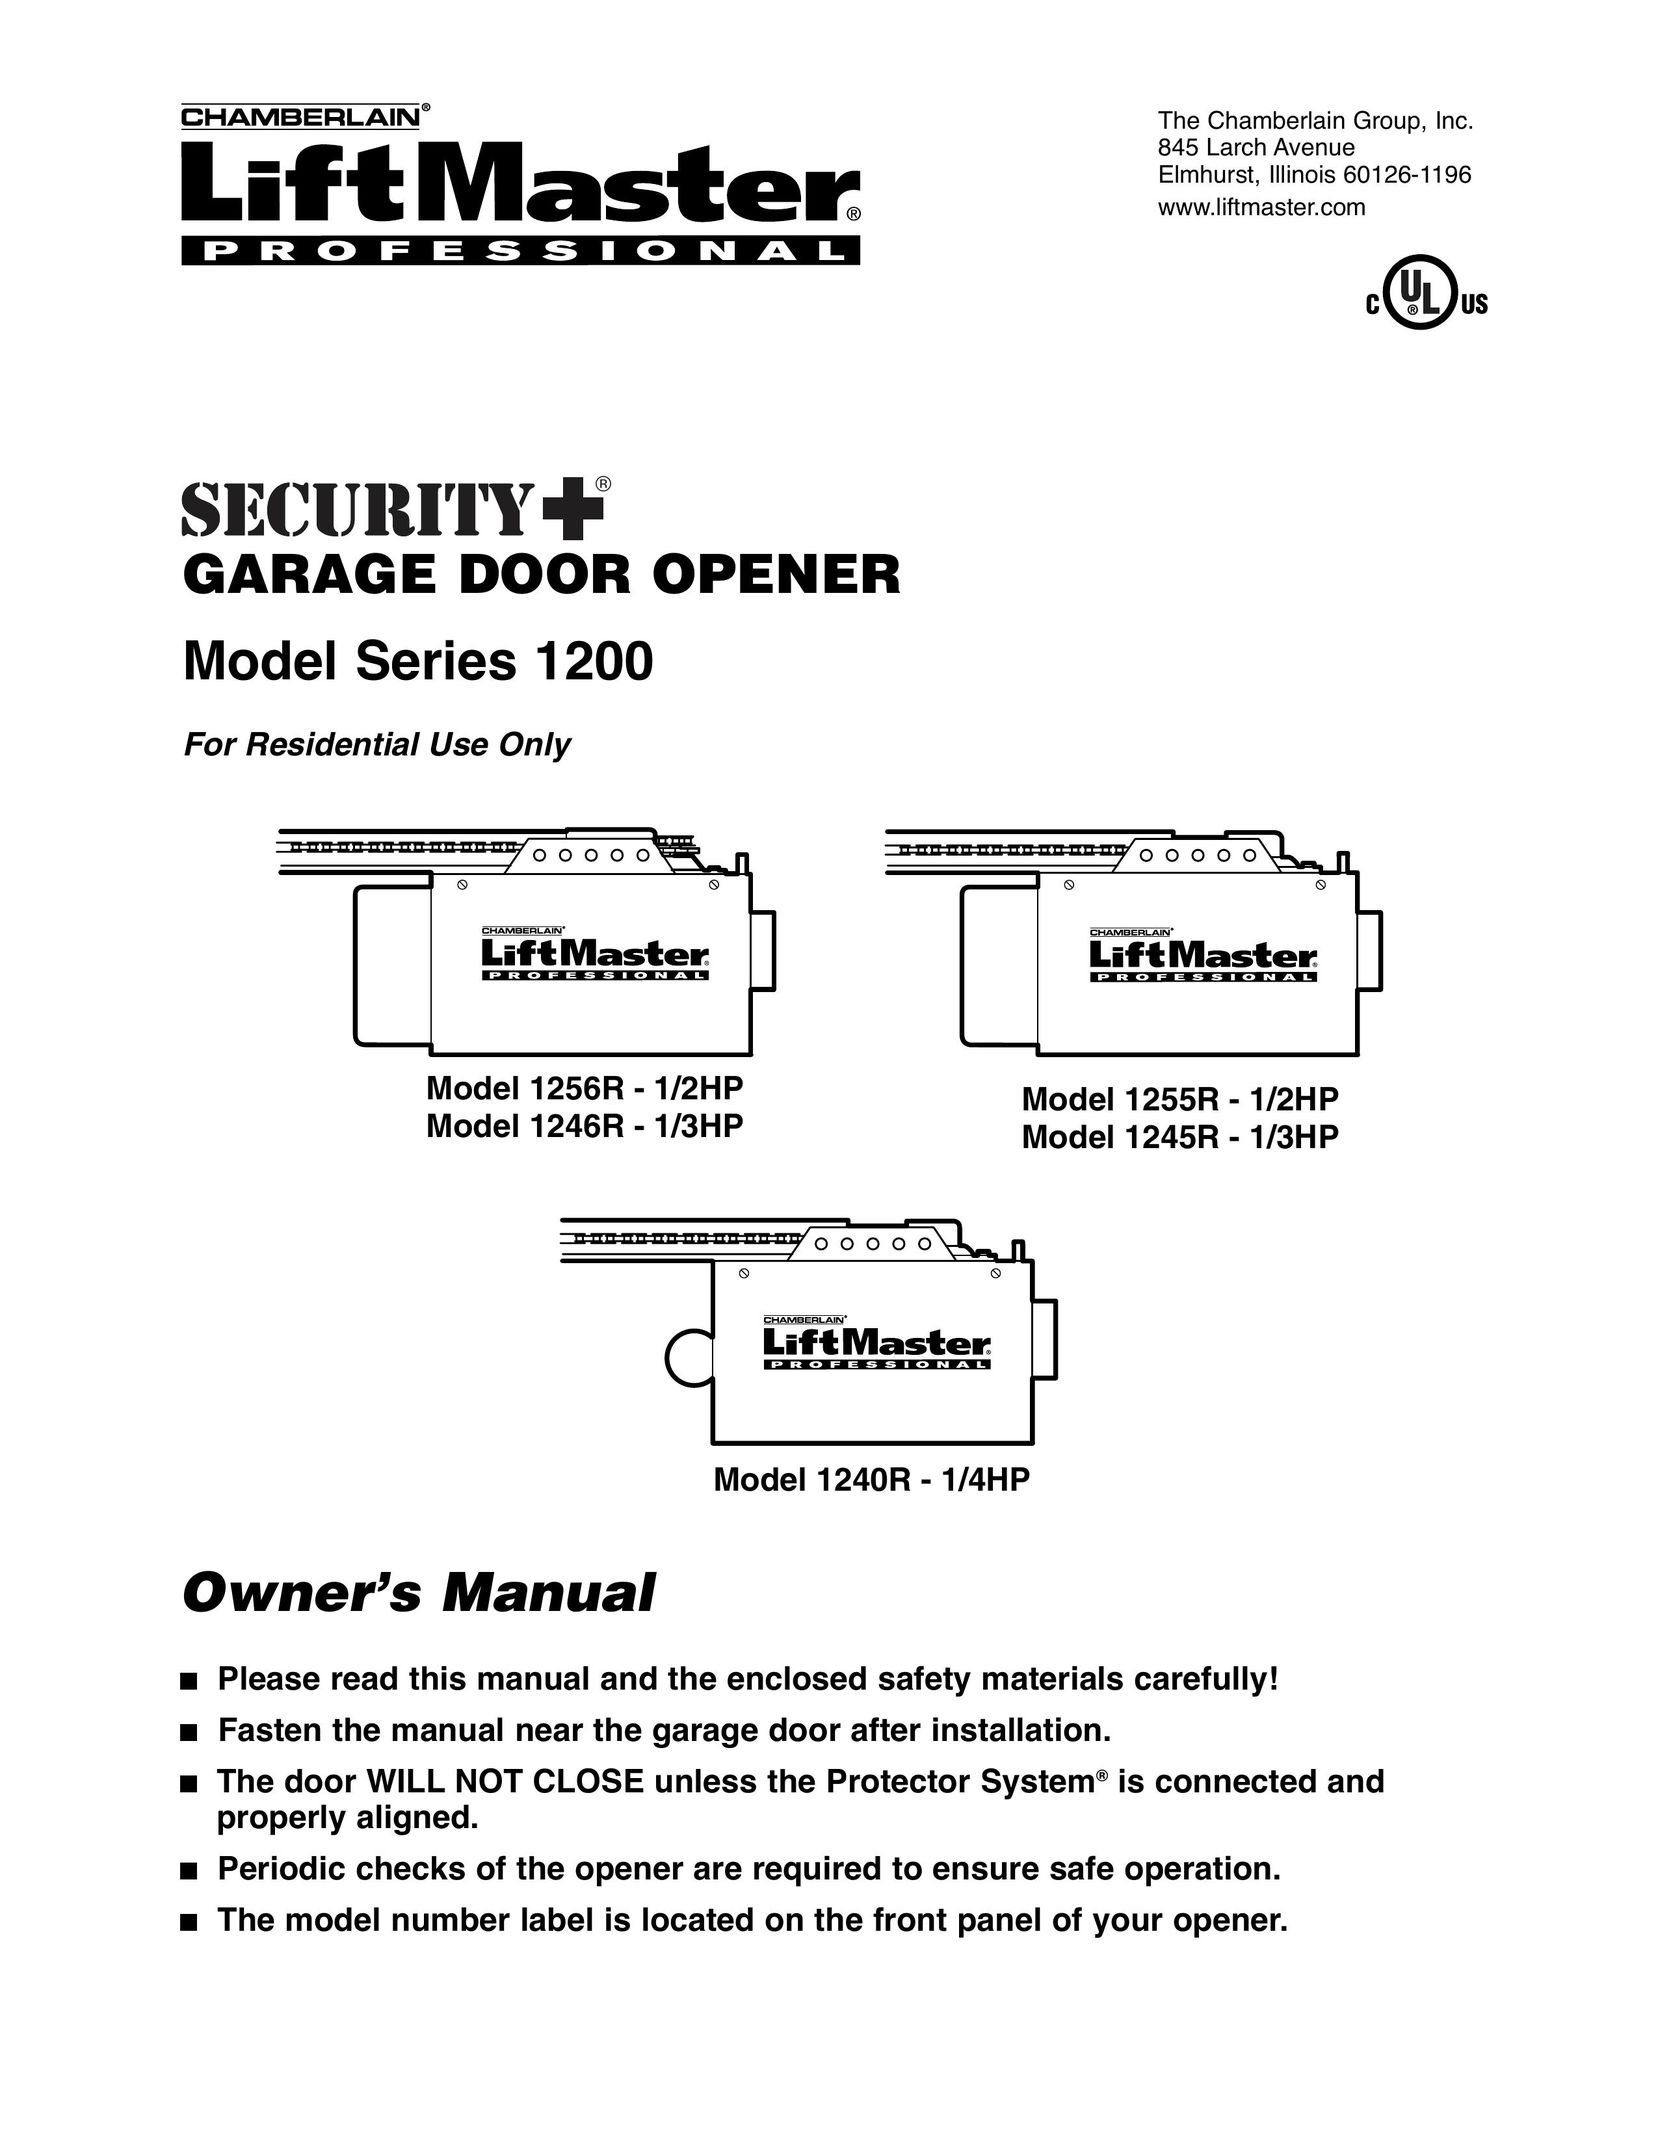 Chamberlain 1245R - 1/3HP Garage Door Opener User Manual